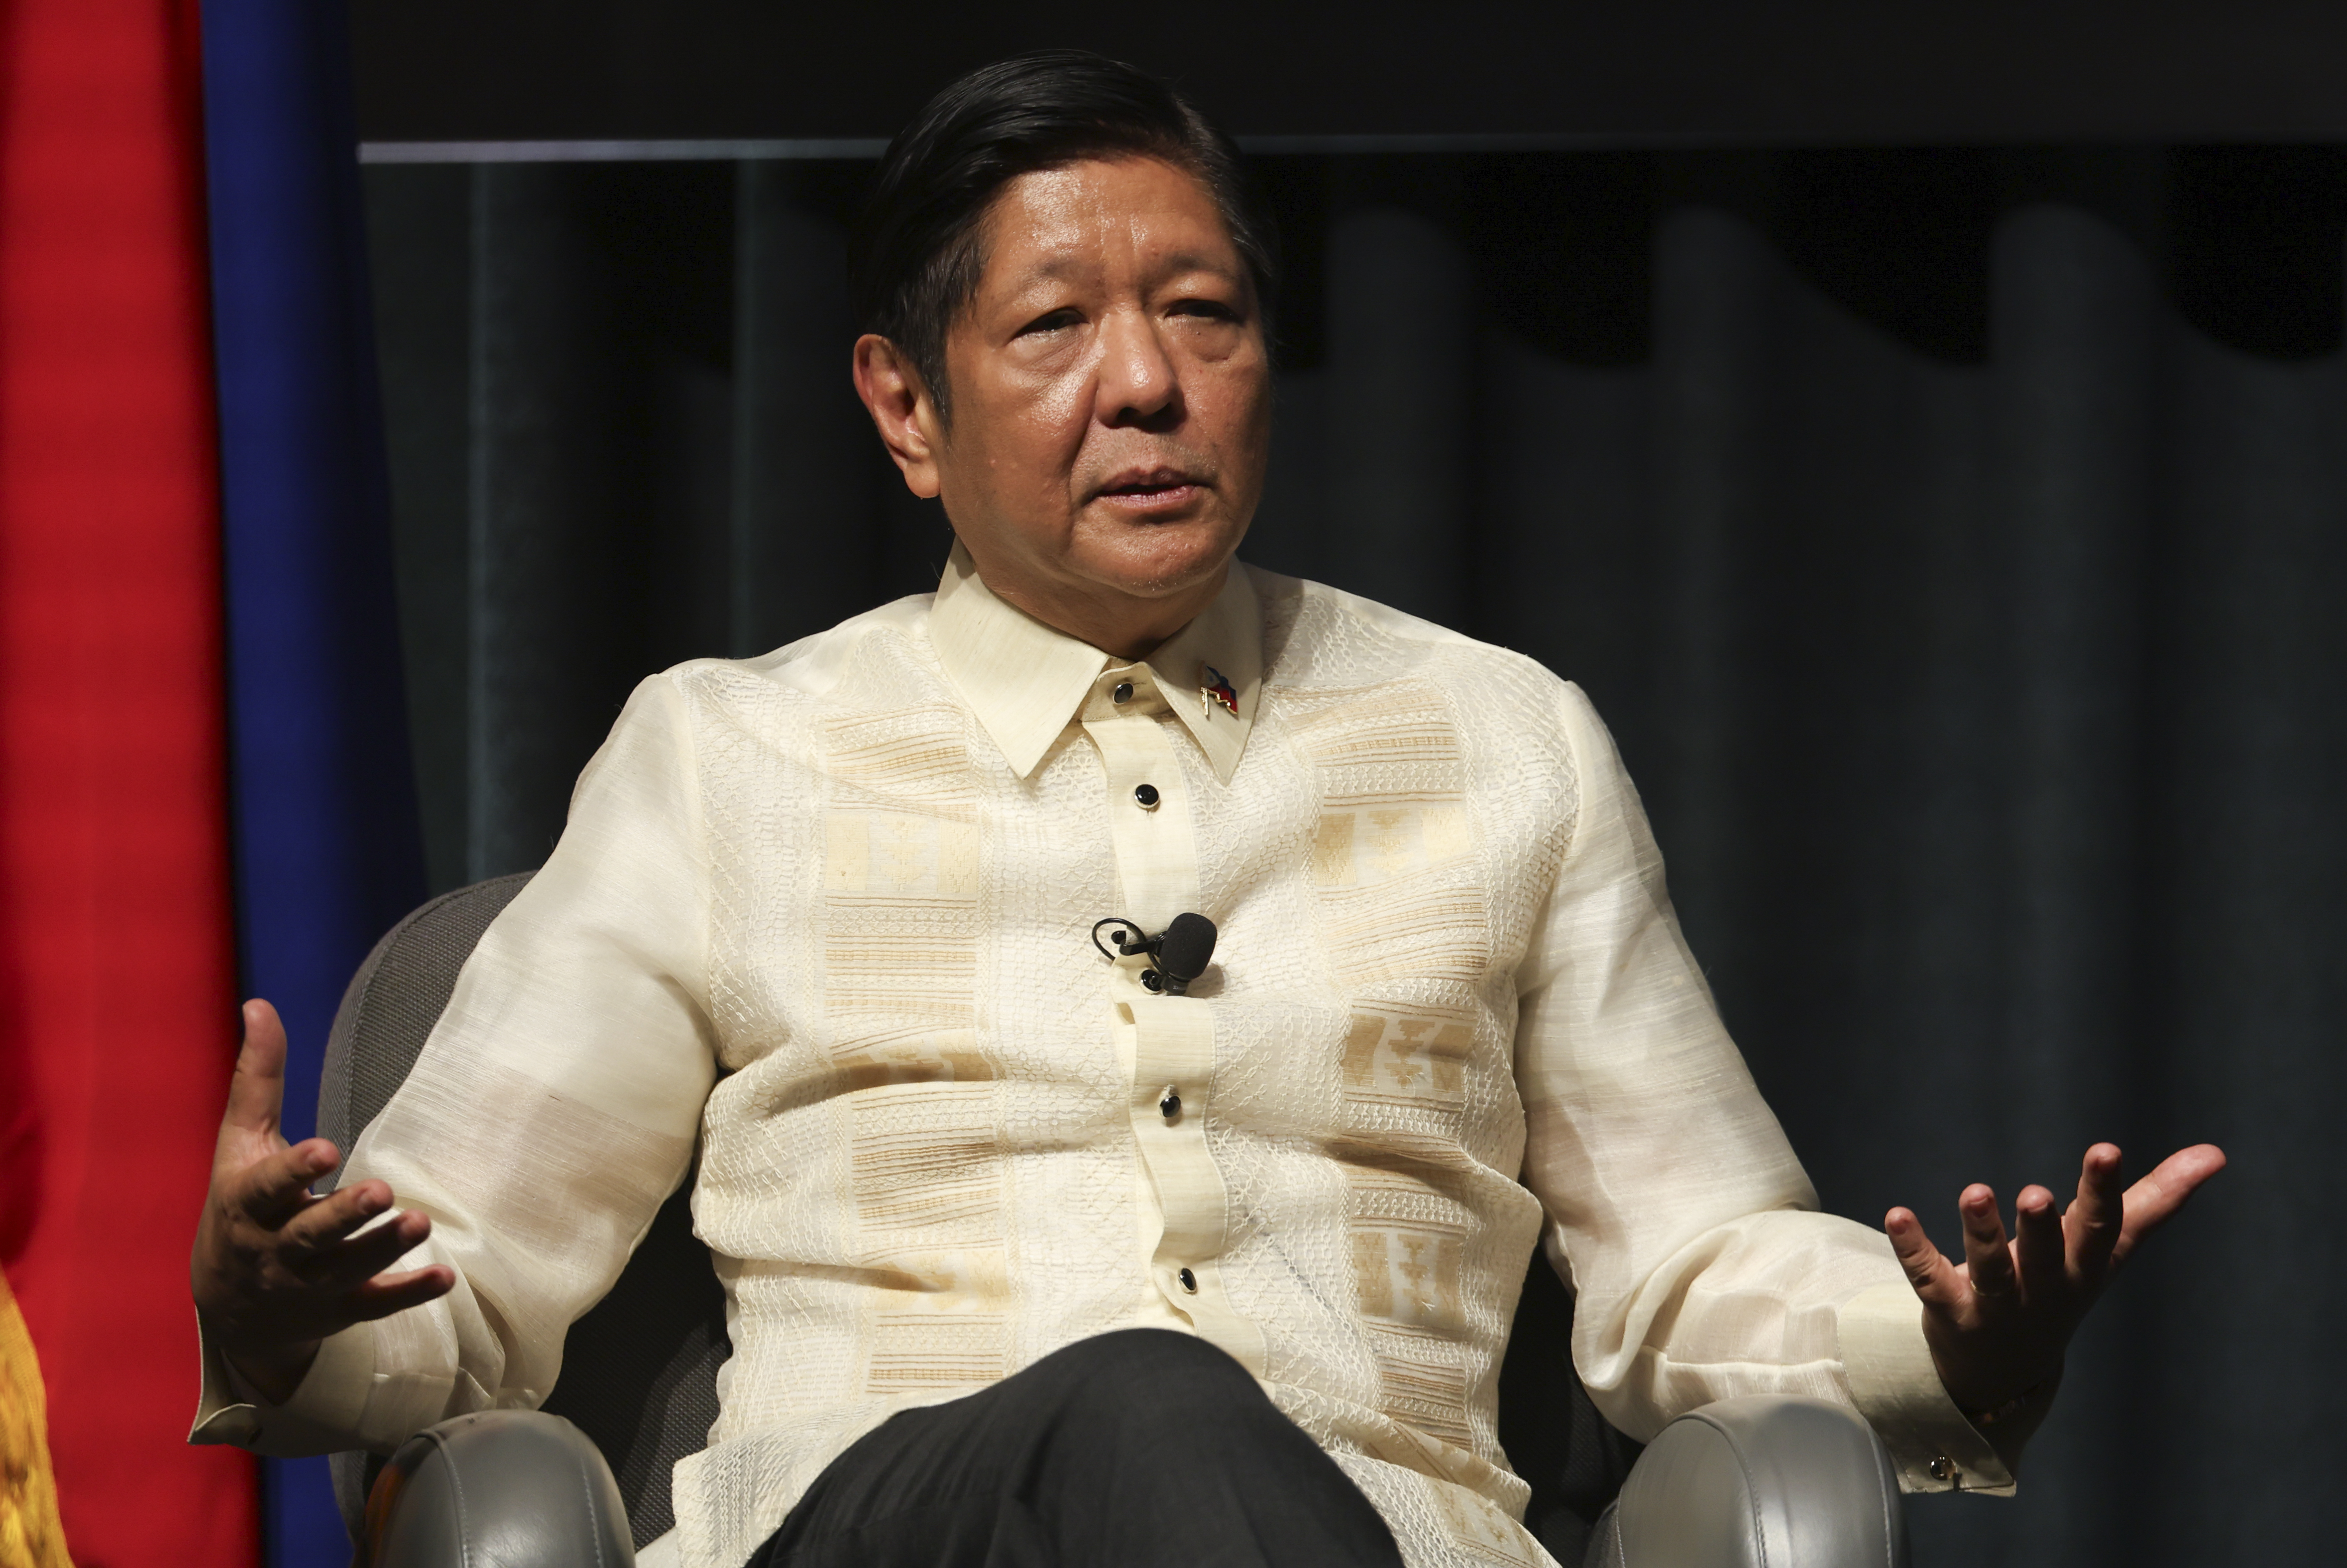 Auf dem Foto sitzt der philippinische Präsident Marcos Jr. in einer Diskussionshaltung.  